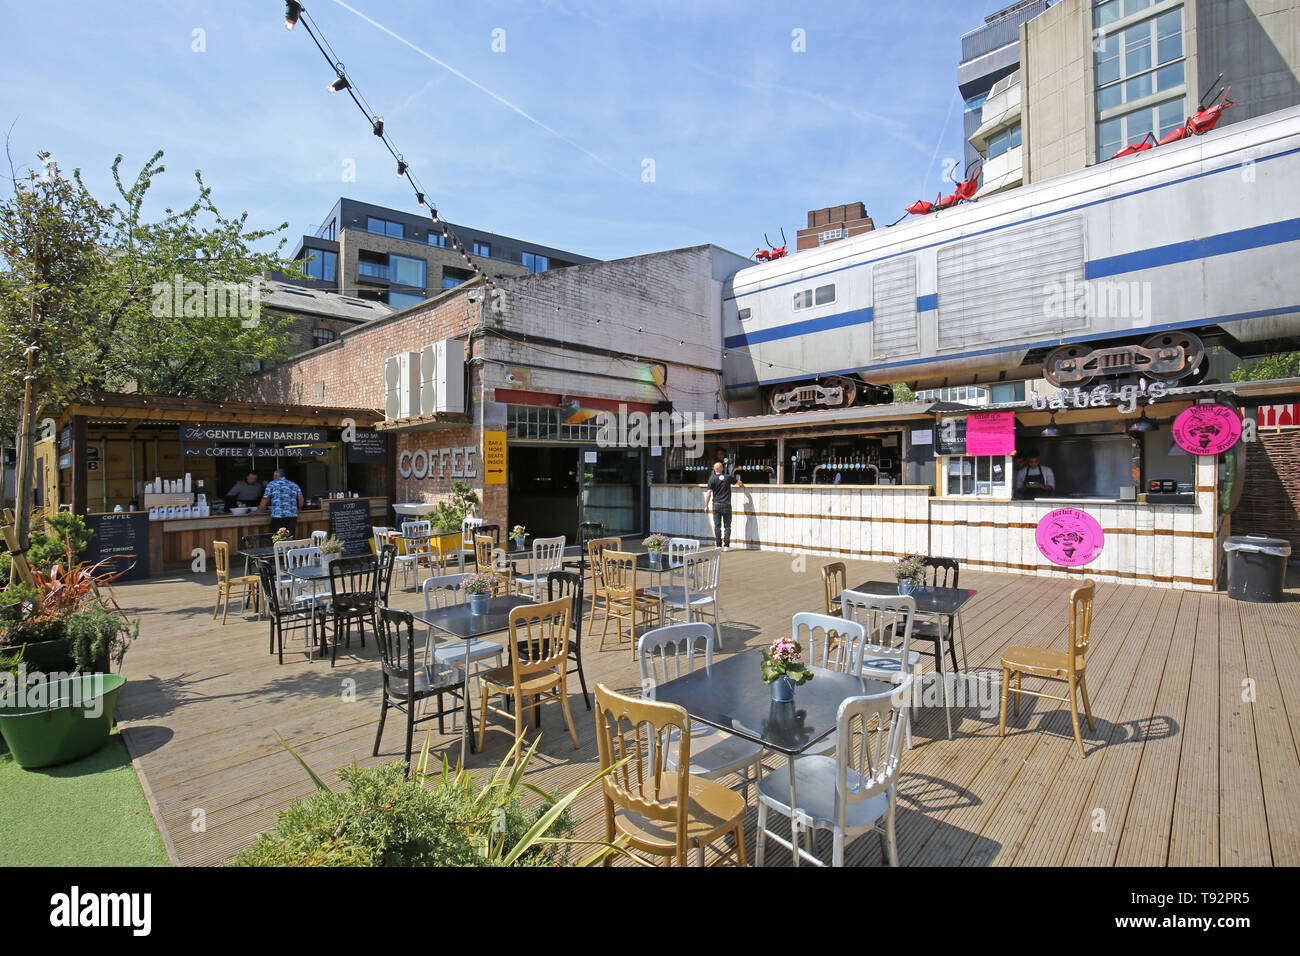 Essig Hof, ein neuer Bereich der Pop-up-Bars, Cafés und Marktstände in der Nähe von London Bridge Station, London, UK. Zug und Giant ant Kunstwerke von Joe Rush. Stockfoto